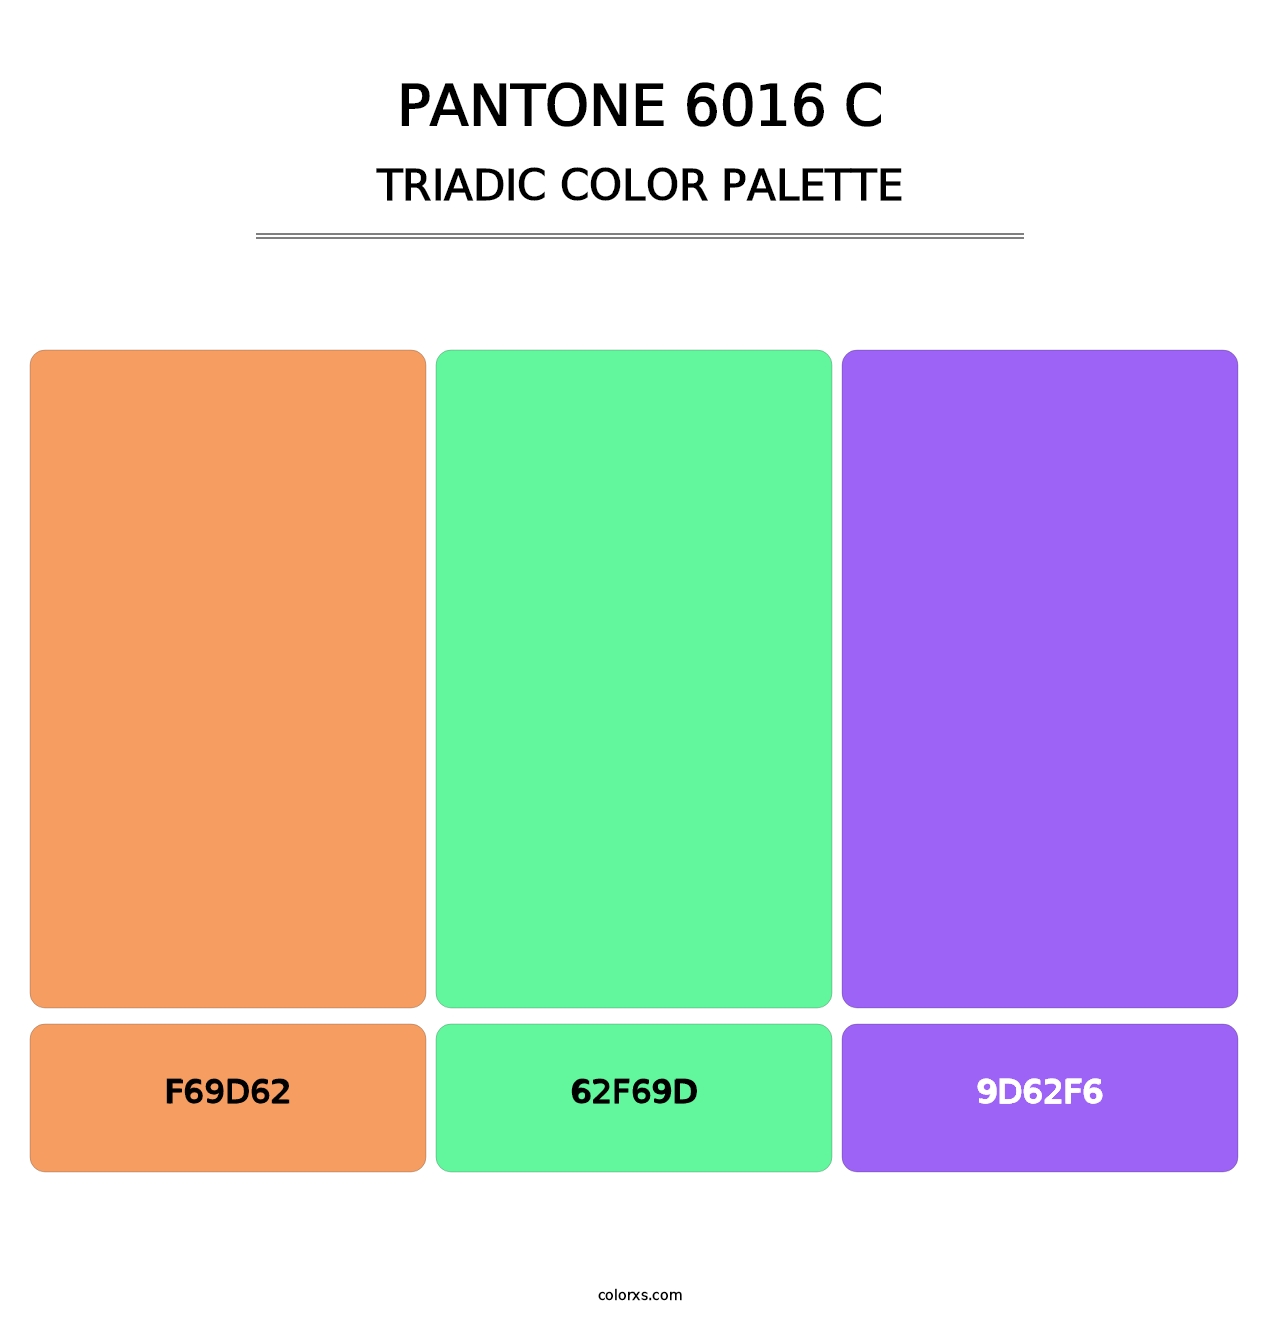 PANTONE 6016 C - Triadic Color Palette